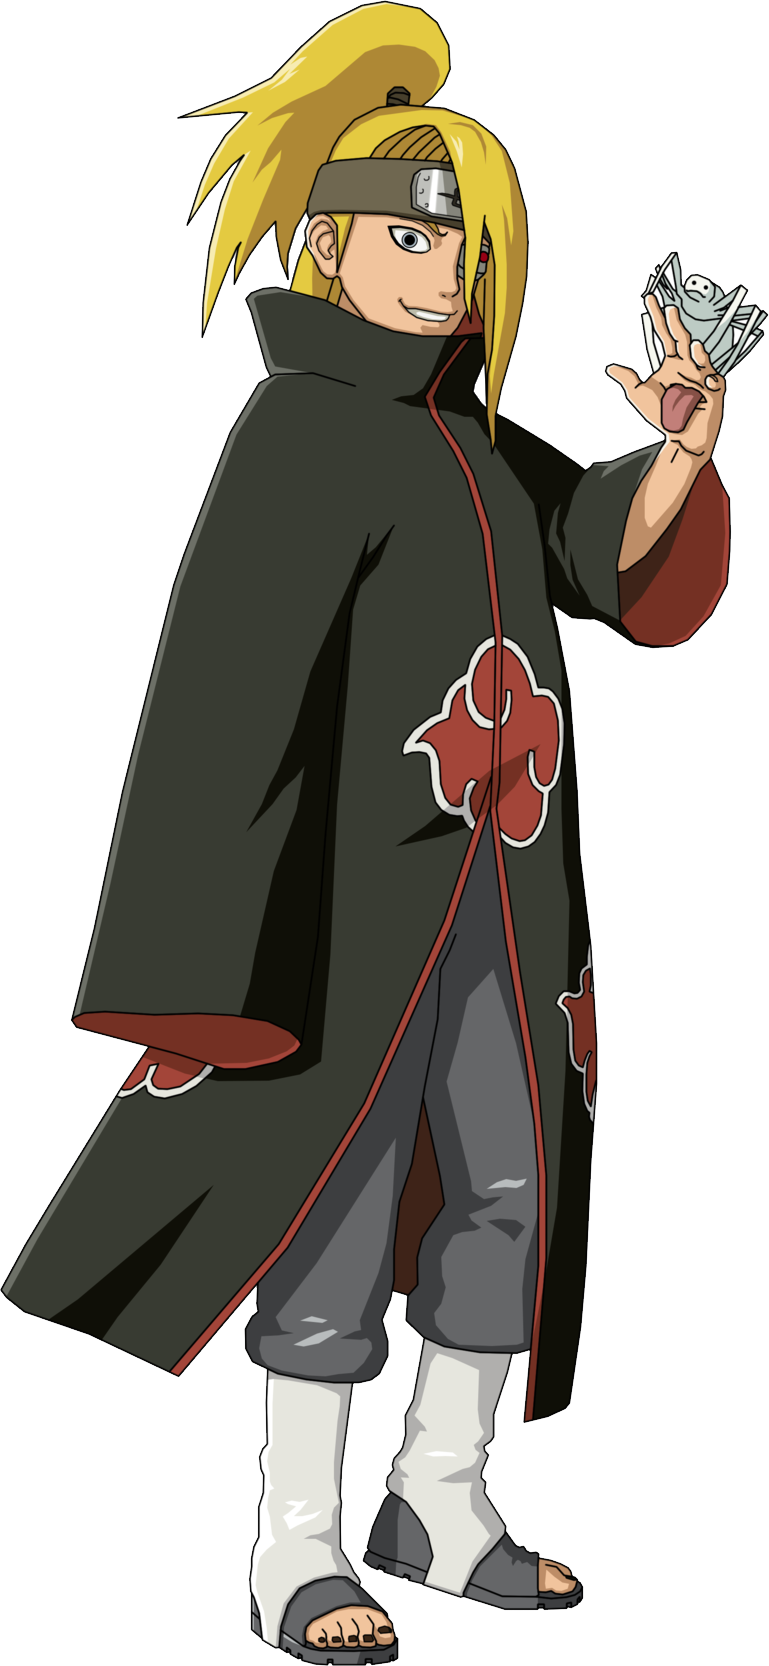 Akatsuki, Wiki Naruto